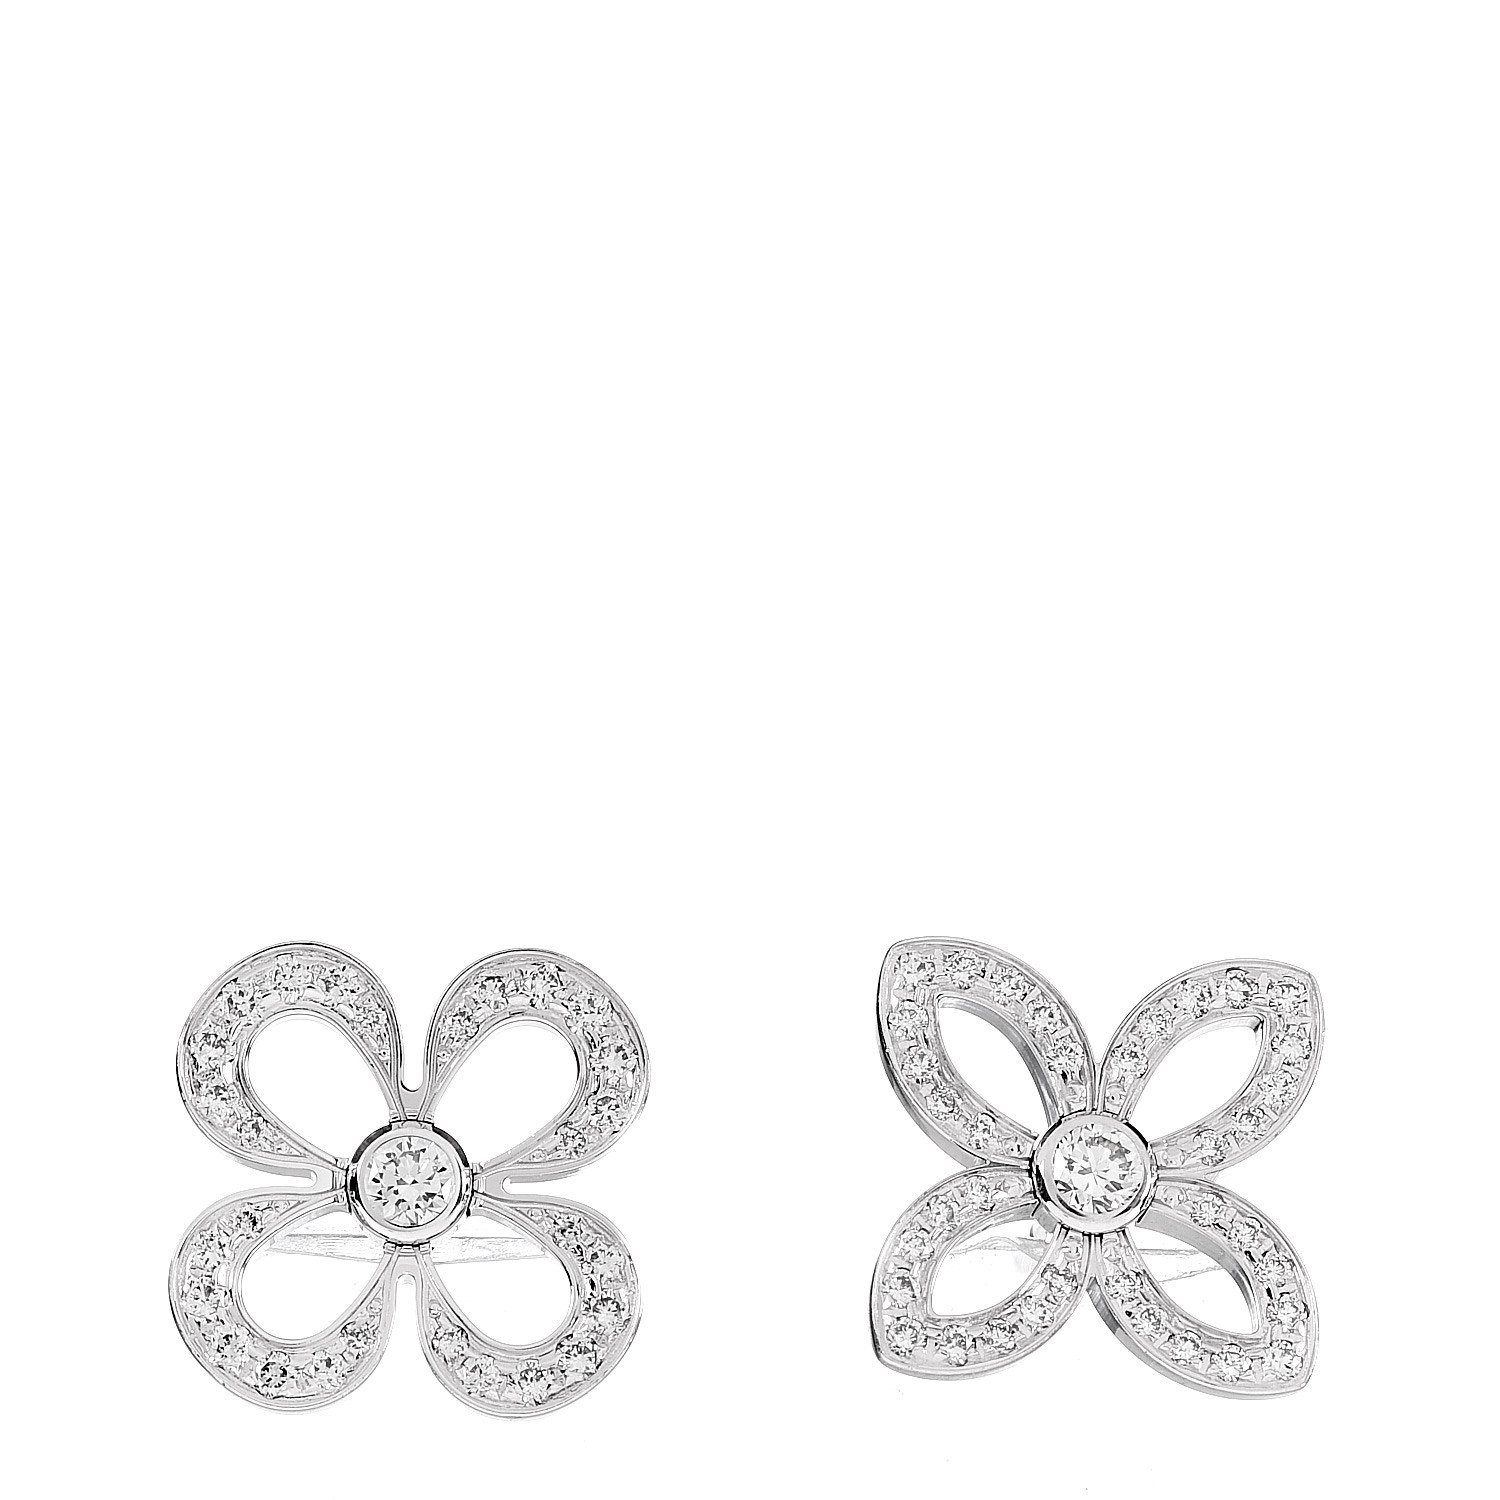 LOUIS VUITTON 18K White Gold Diamond Idylle Blossom Earrings 623872